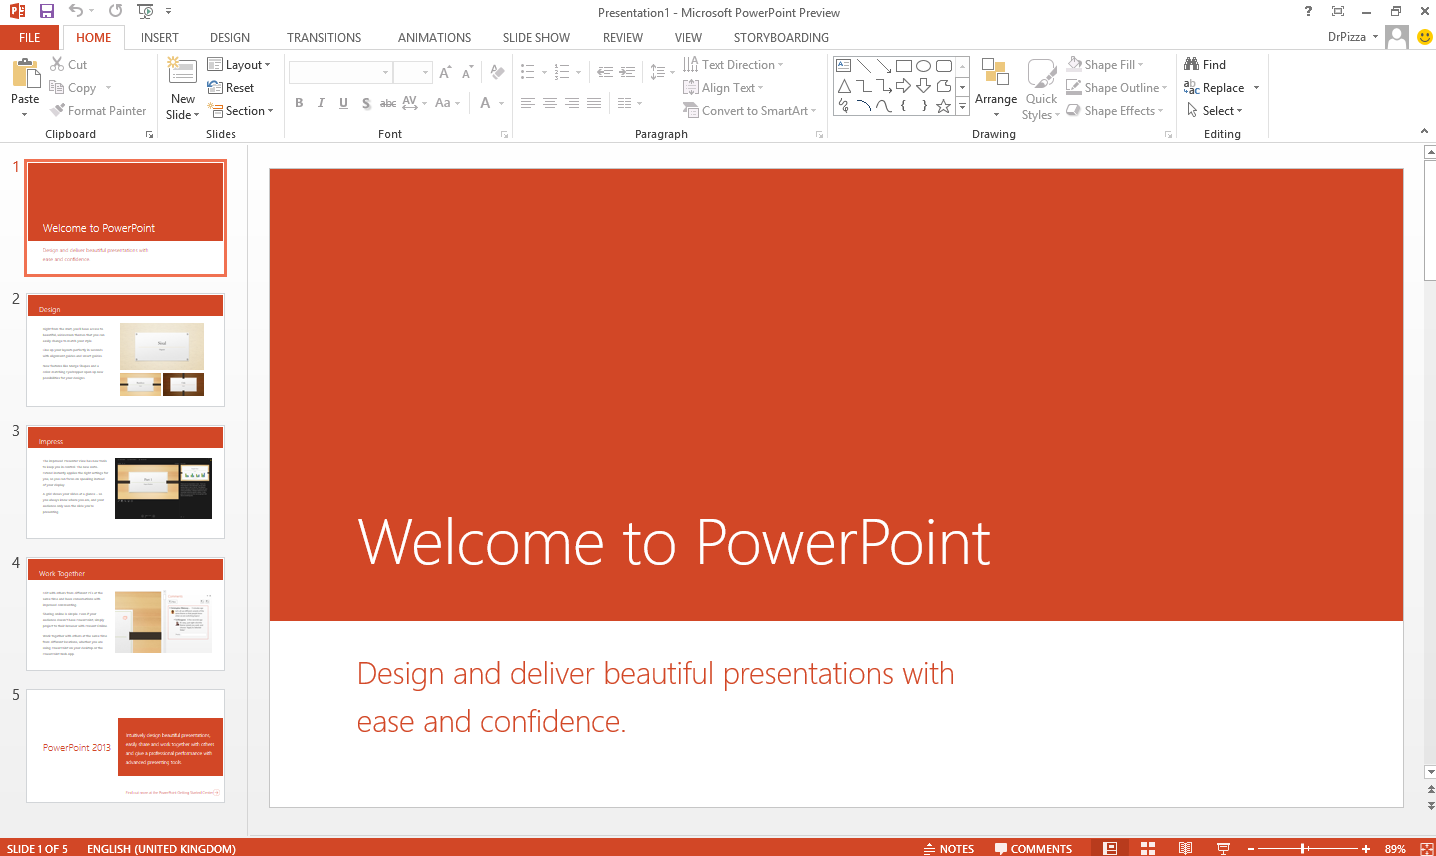 powerpoint presentation 2013 download